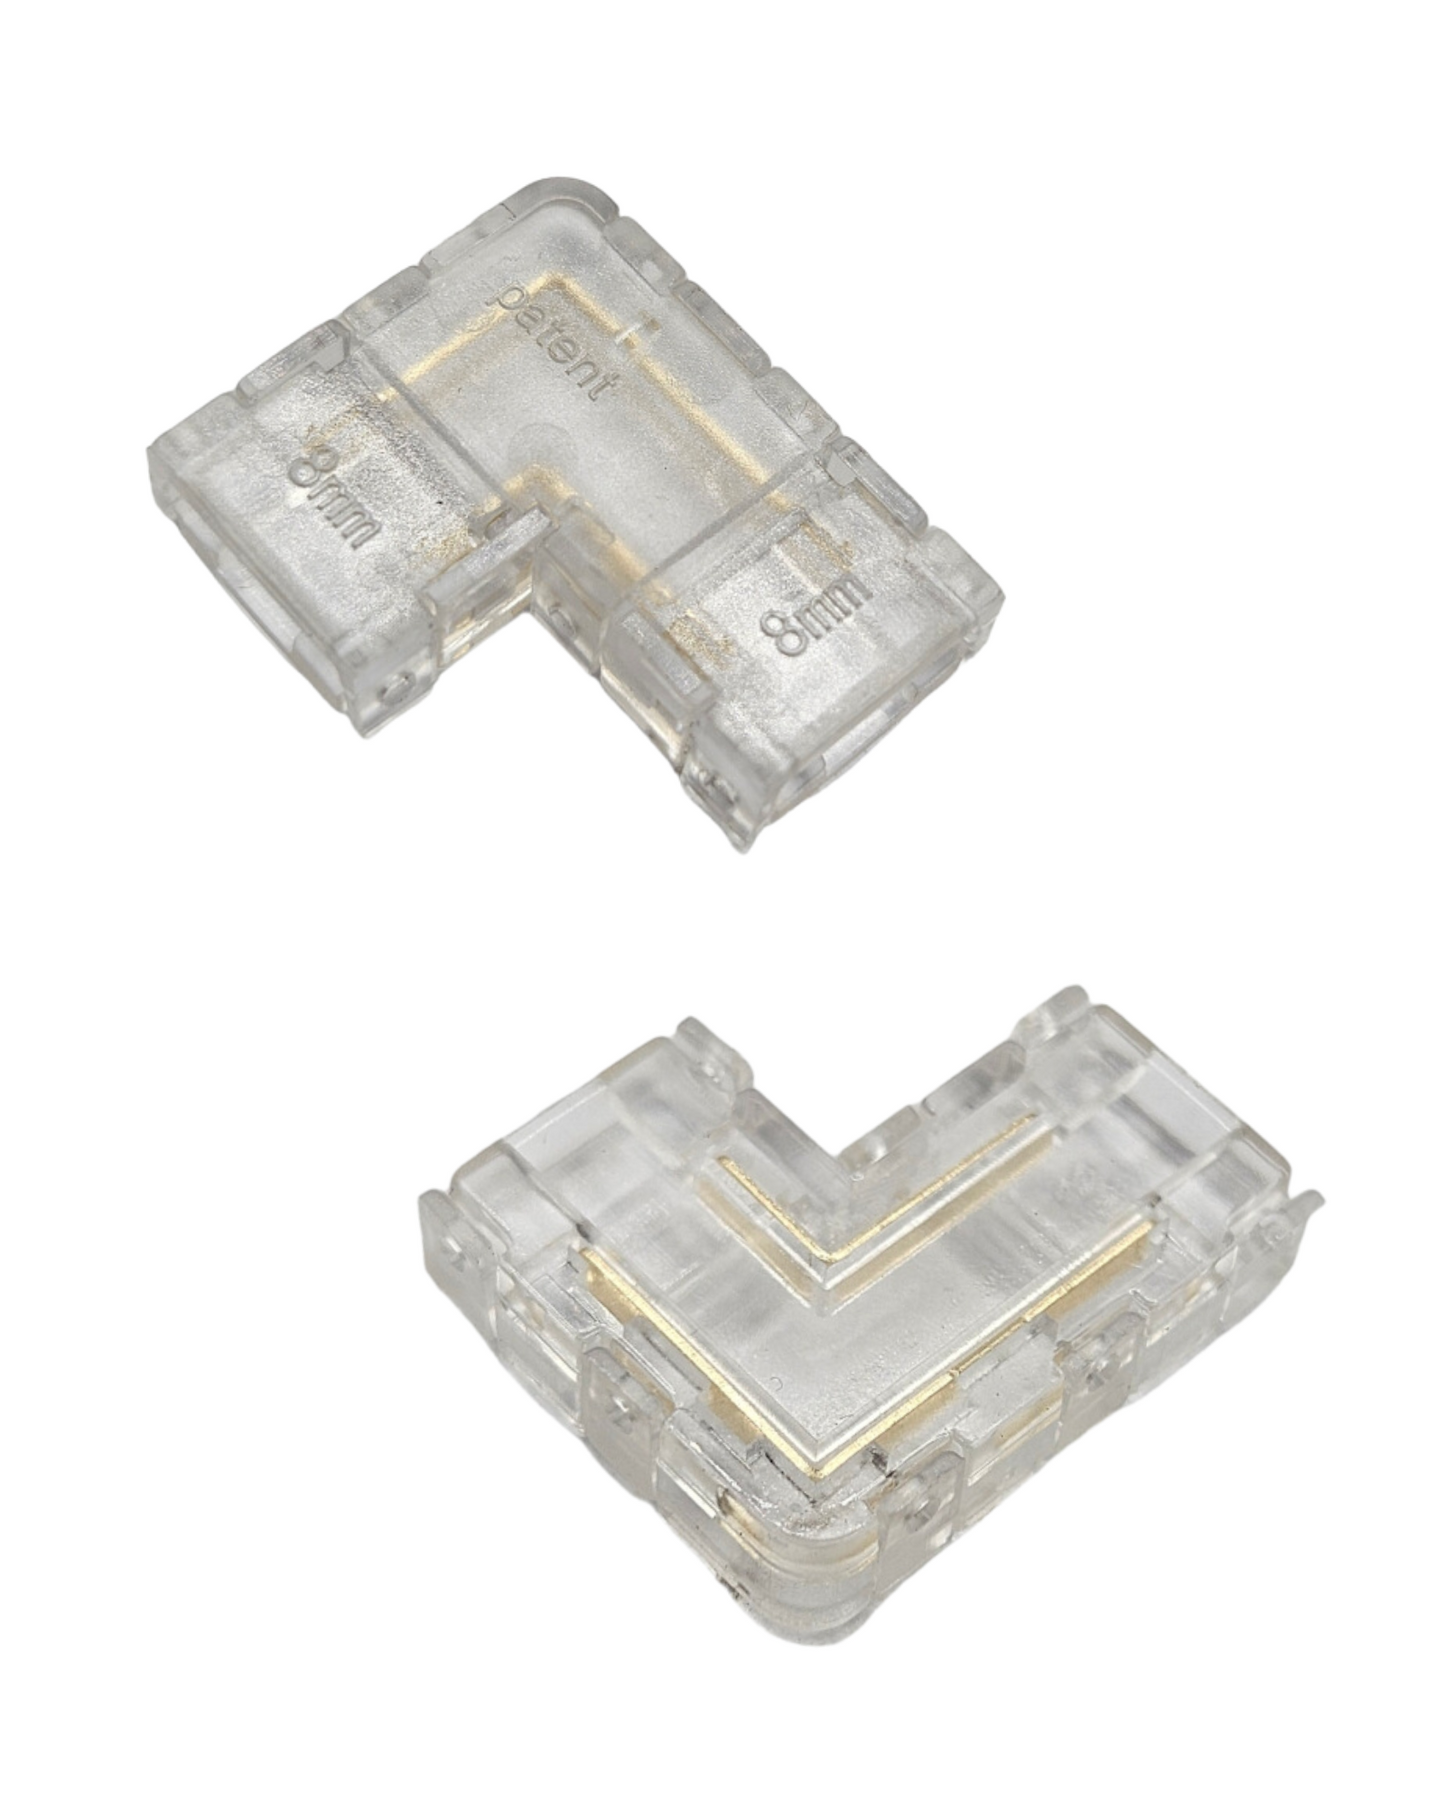 Conector transparente para Tira LED 8mm | Cople empalme para Tira de LED 5050